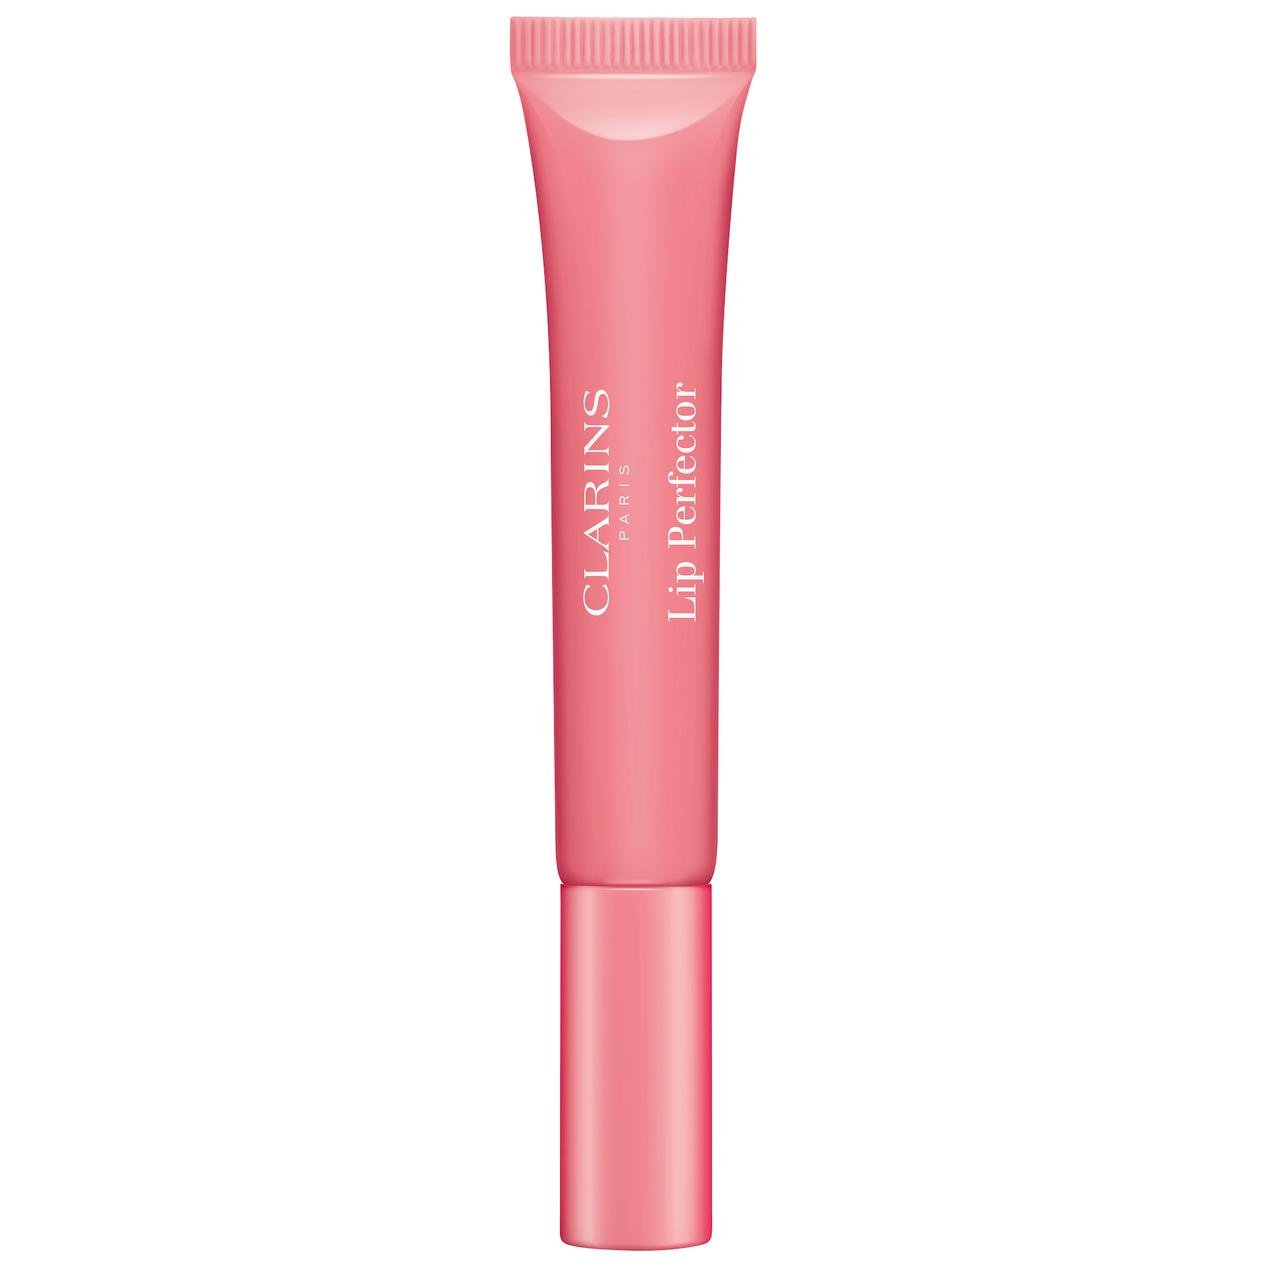 Instant Light Natural Lip Perfector 01 Rose Shimmer för 176,25 kr på Kicks